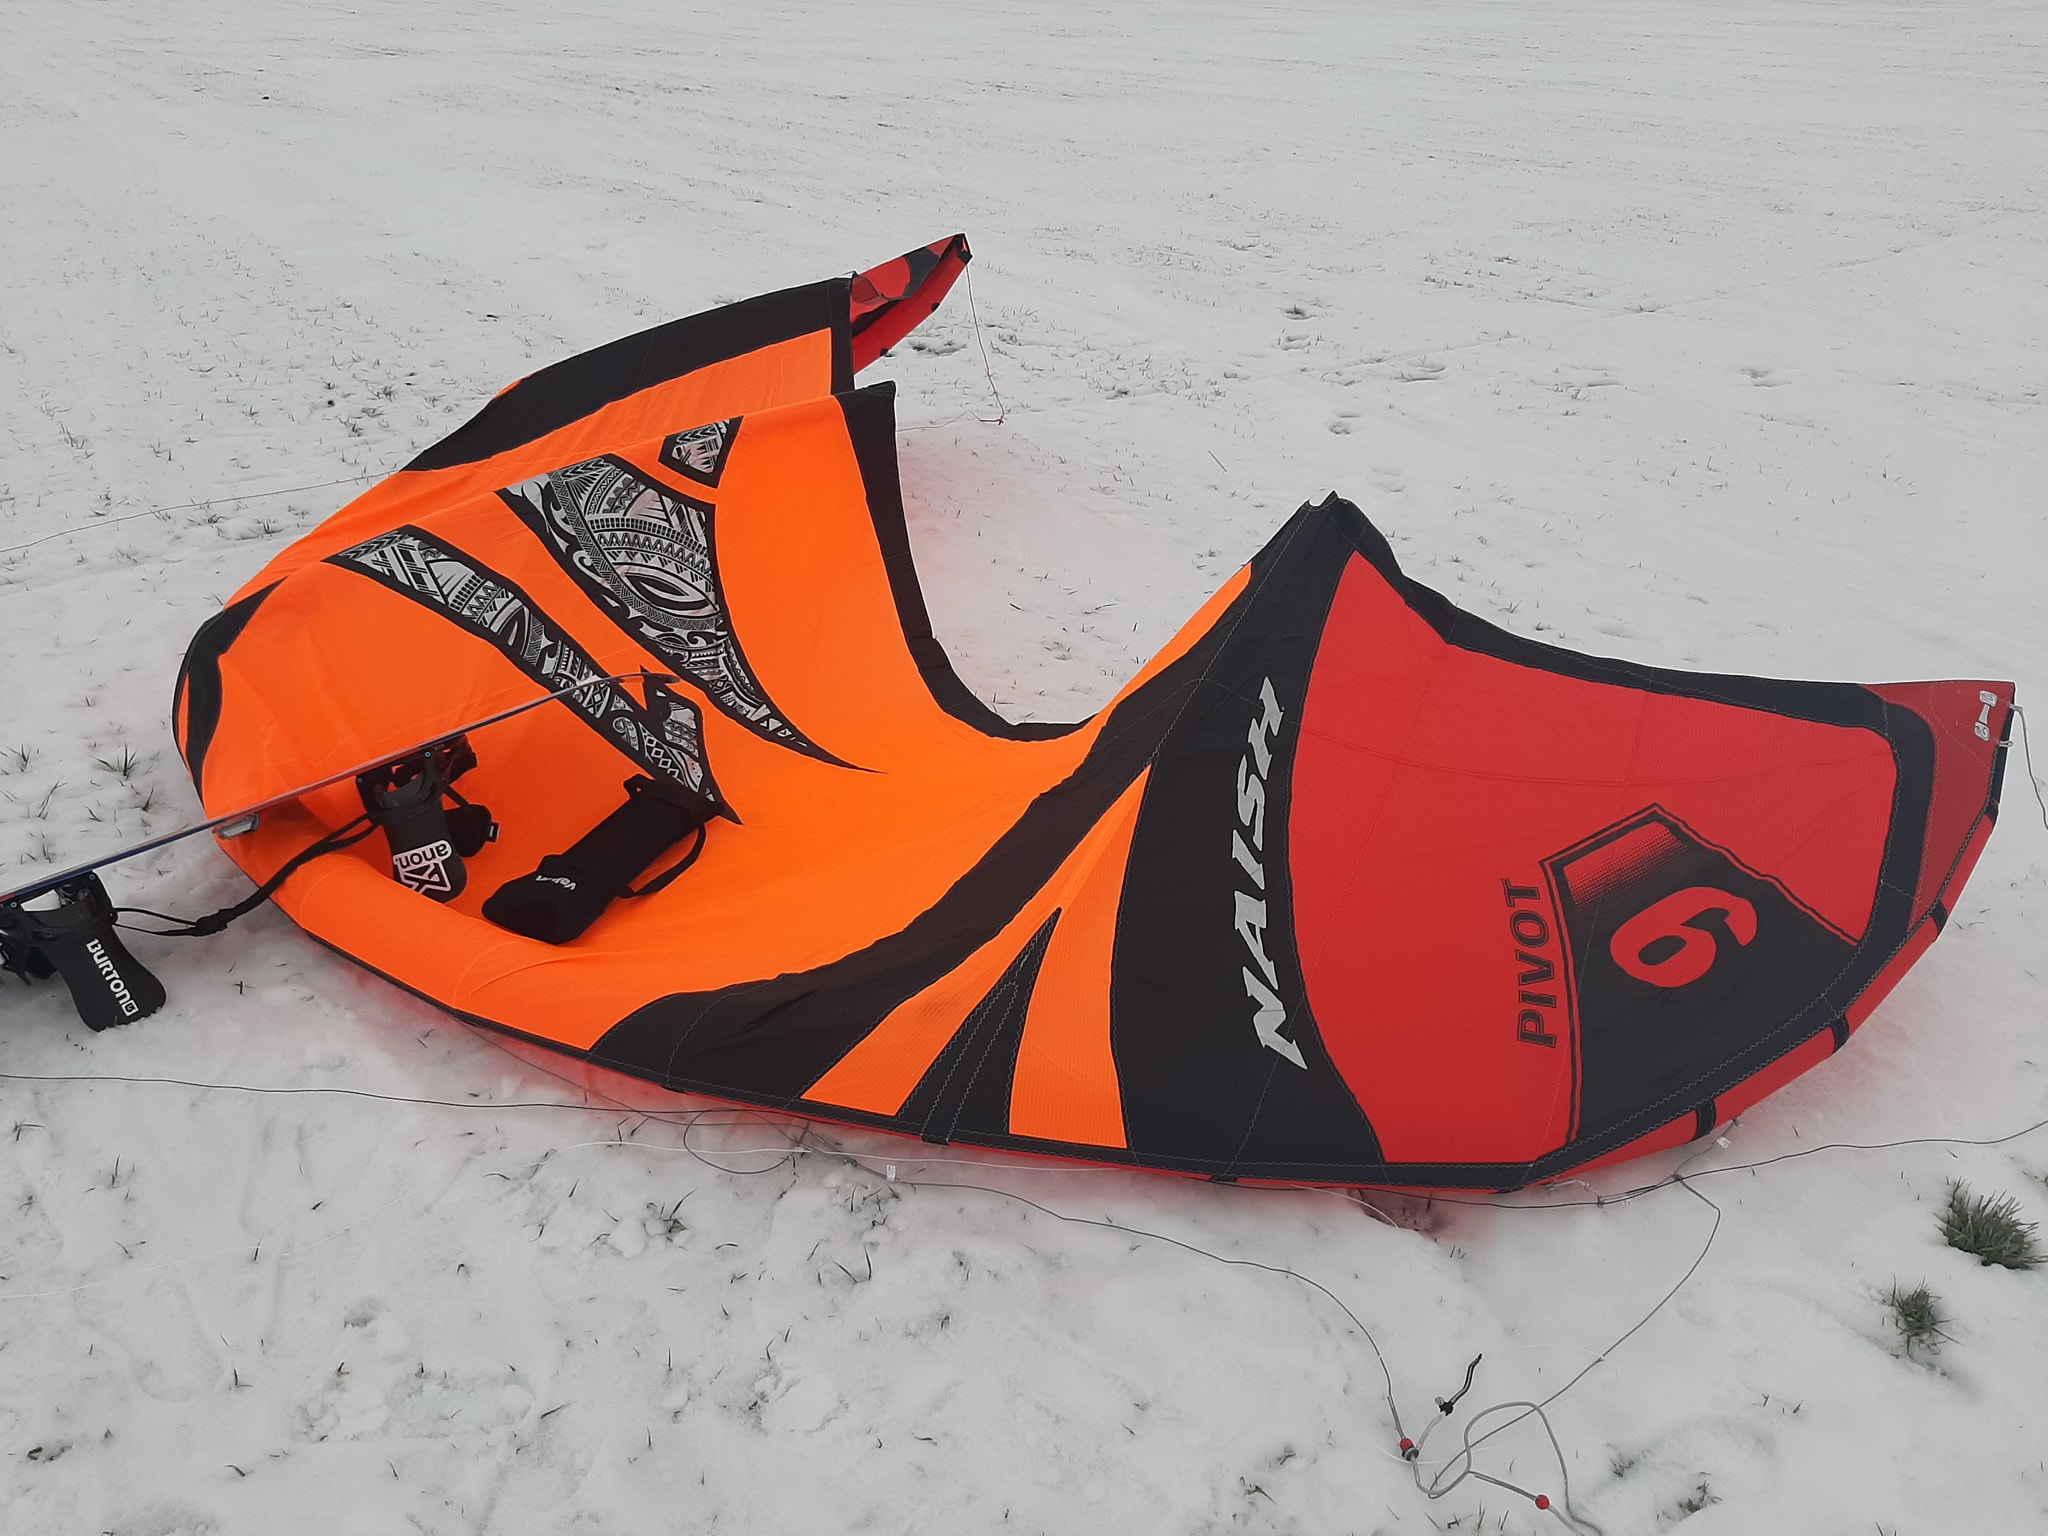 Artūras Dudėnas #159 Test snowkiteboarding S26 Naish Pivot 9m Ginkunai